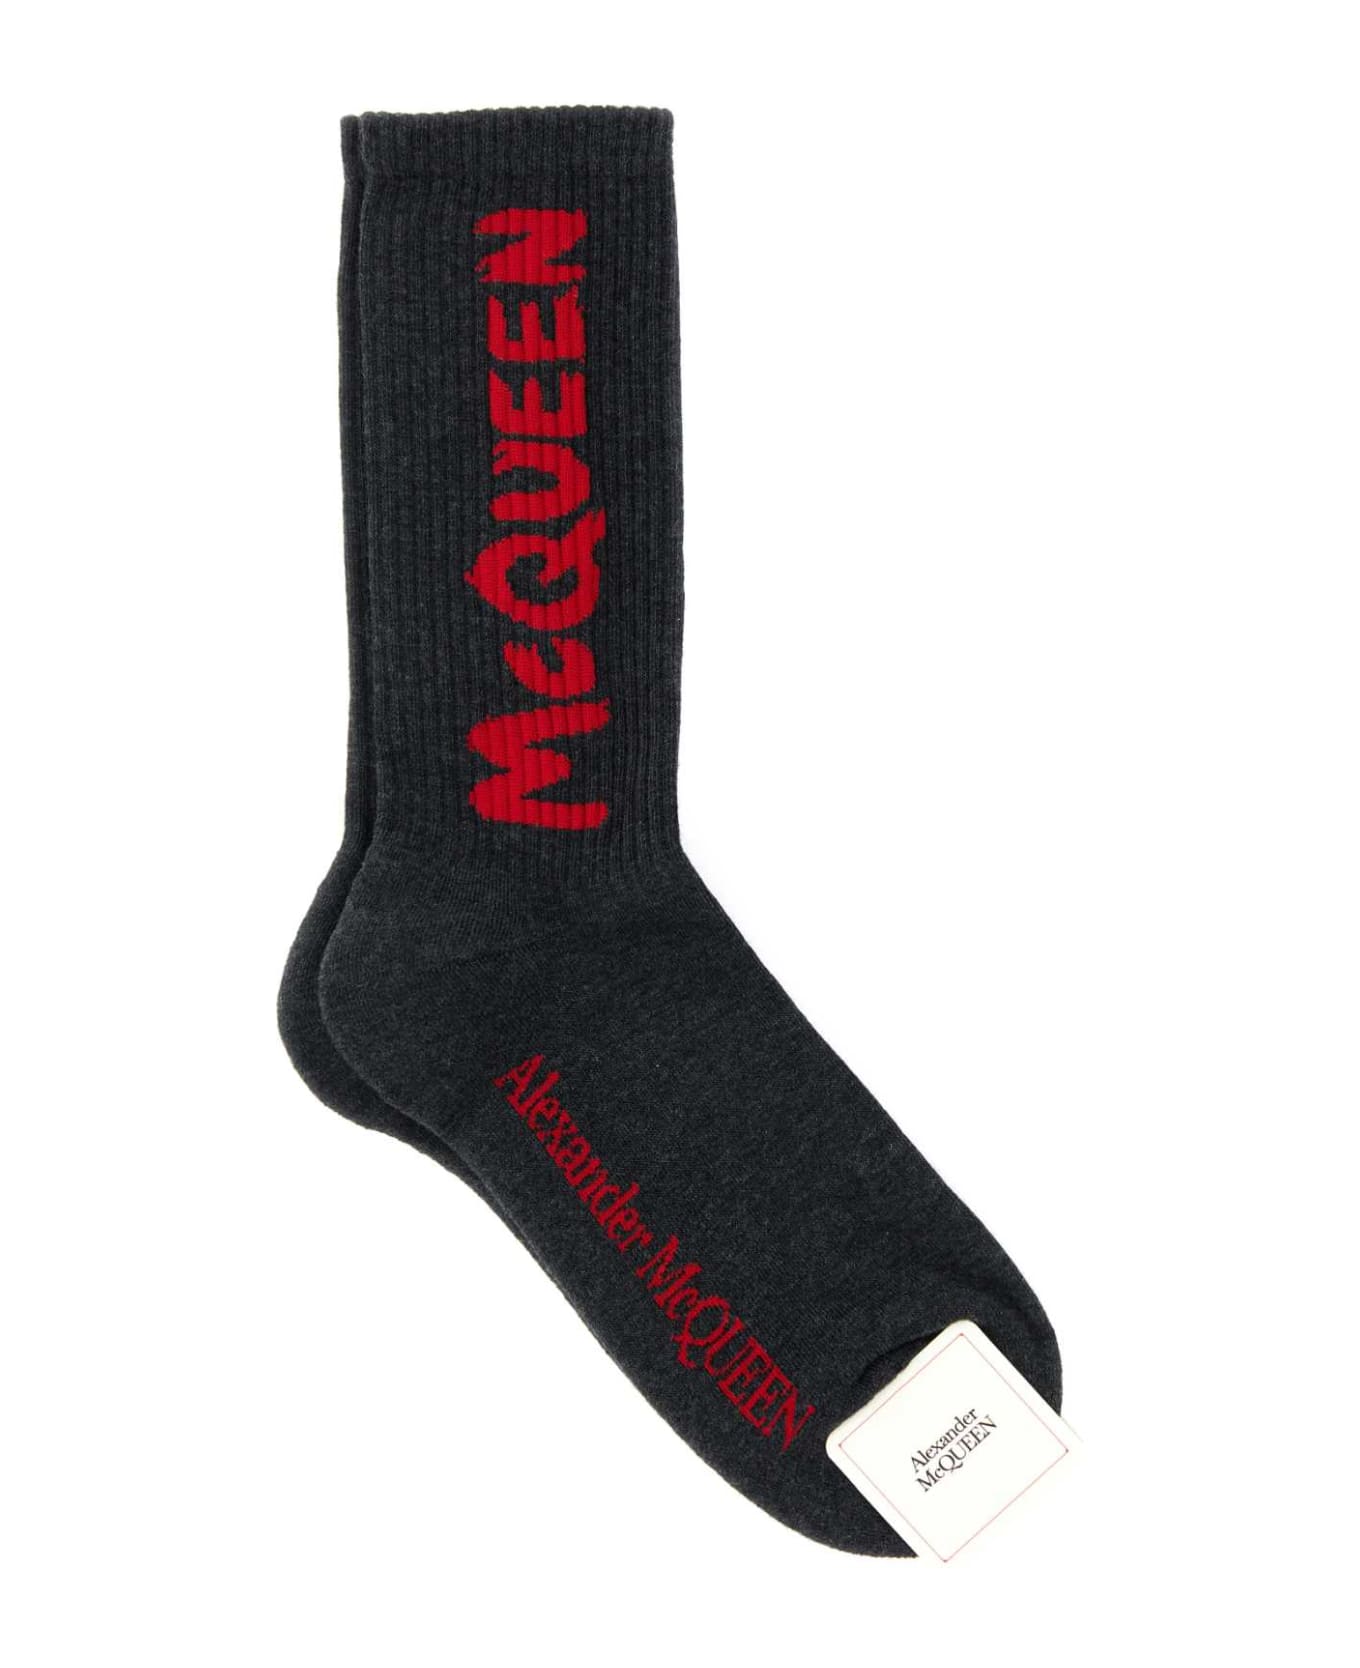 Alexander McQueen Graphite Stretch Cotton Blend Socks - BLACKRED